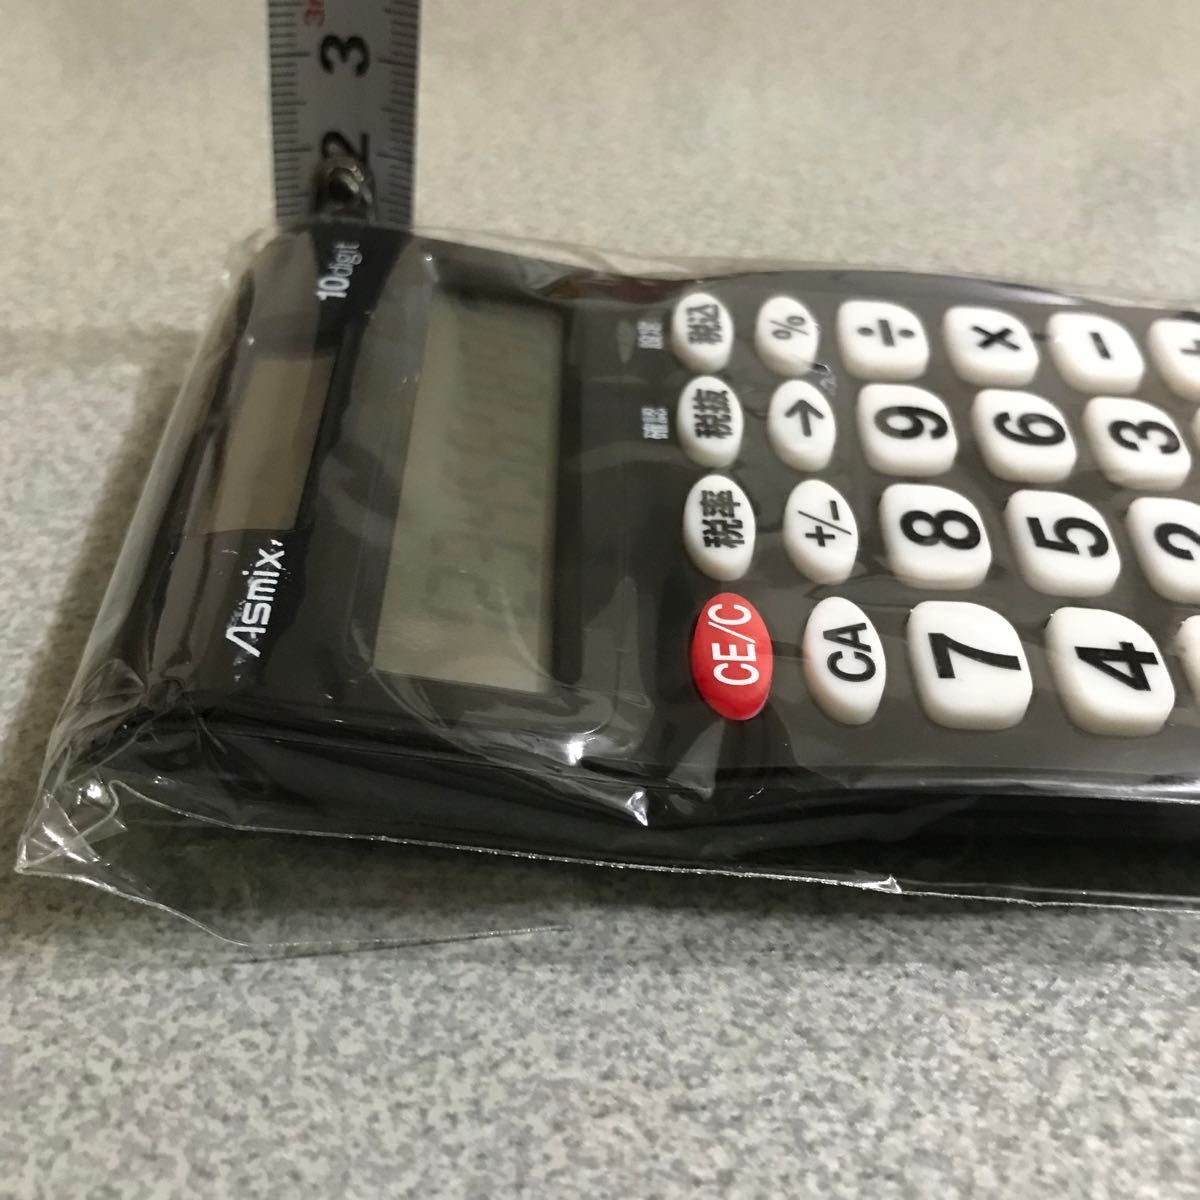 アスカ　ビジネス電卓ポケット C1009BK 黒2電源 オートパワーオフ機能　税計算　早打ちコンパクト　Asmix